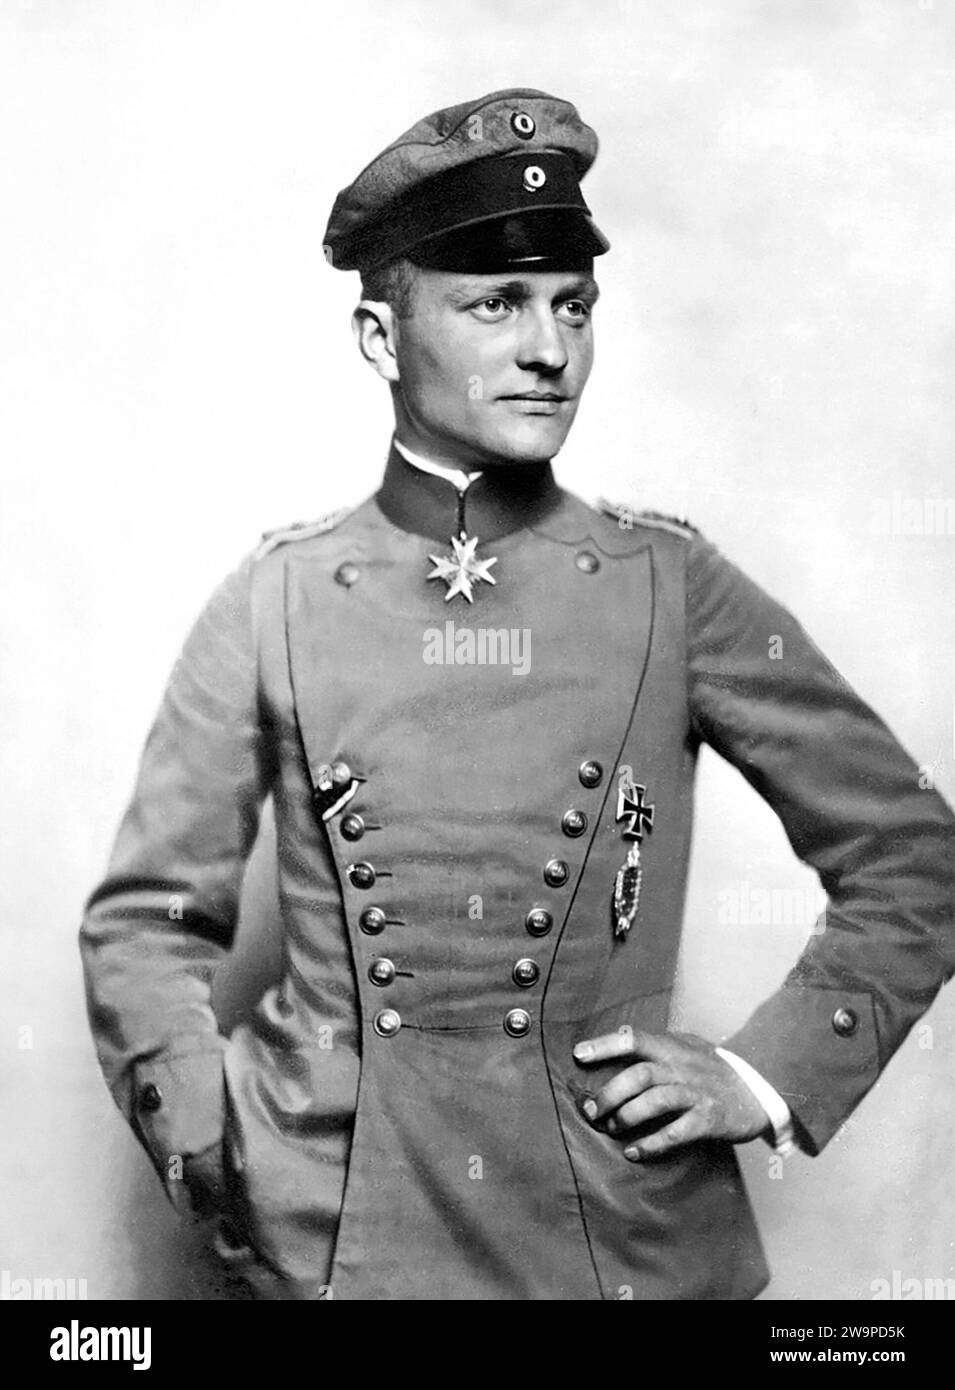 Manfred von Richthofen. Portrait of the German air ace, Manfred Albrecht Freiherr von Richthofen (1892-1918), known in English as Baron von Richthofen or the Red Baron, c. 1917/18 Stock Photo